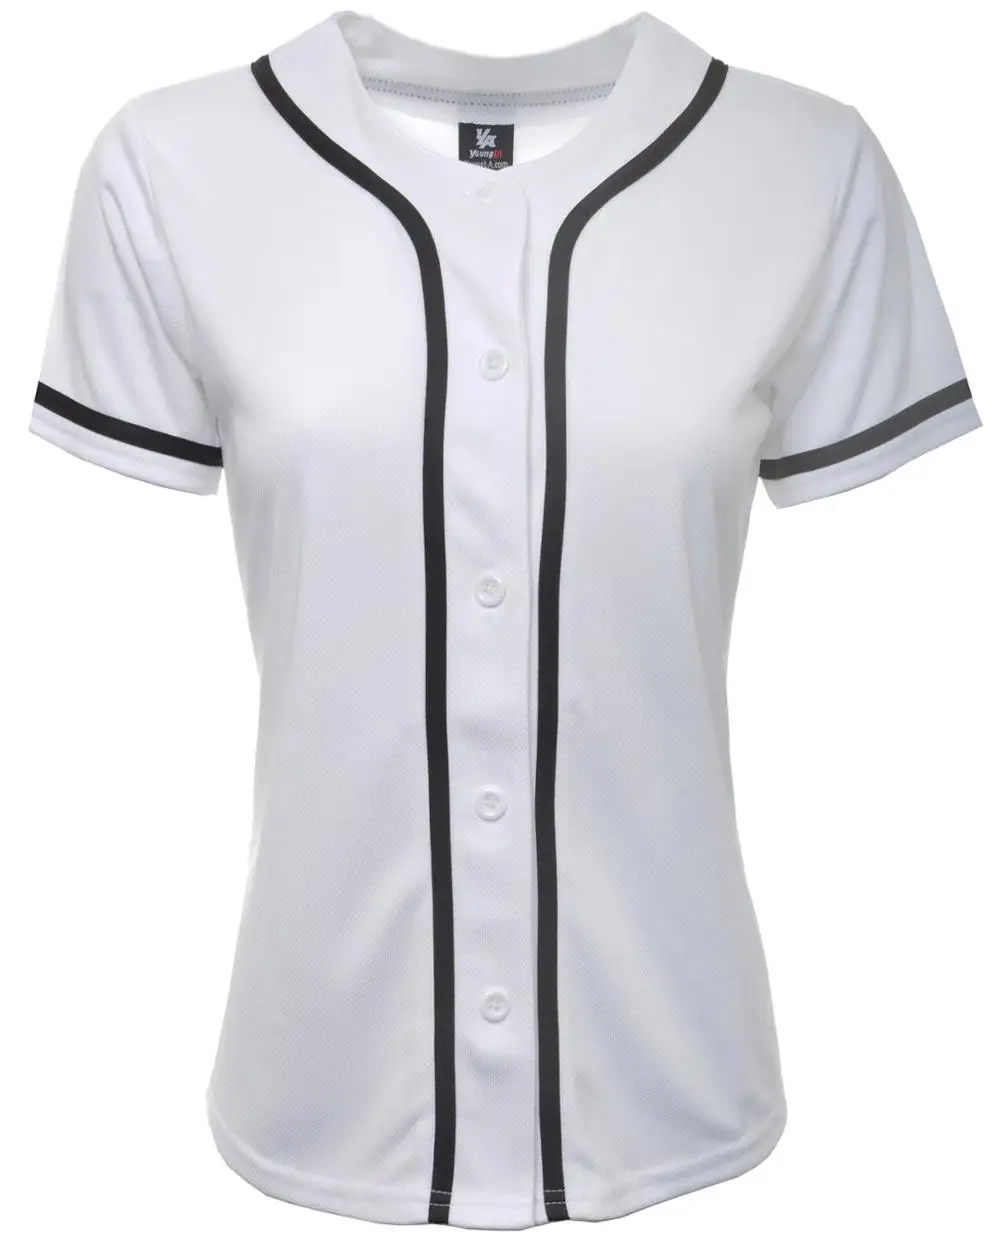 white baseball jersey shirt